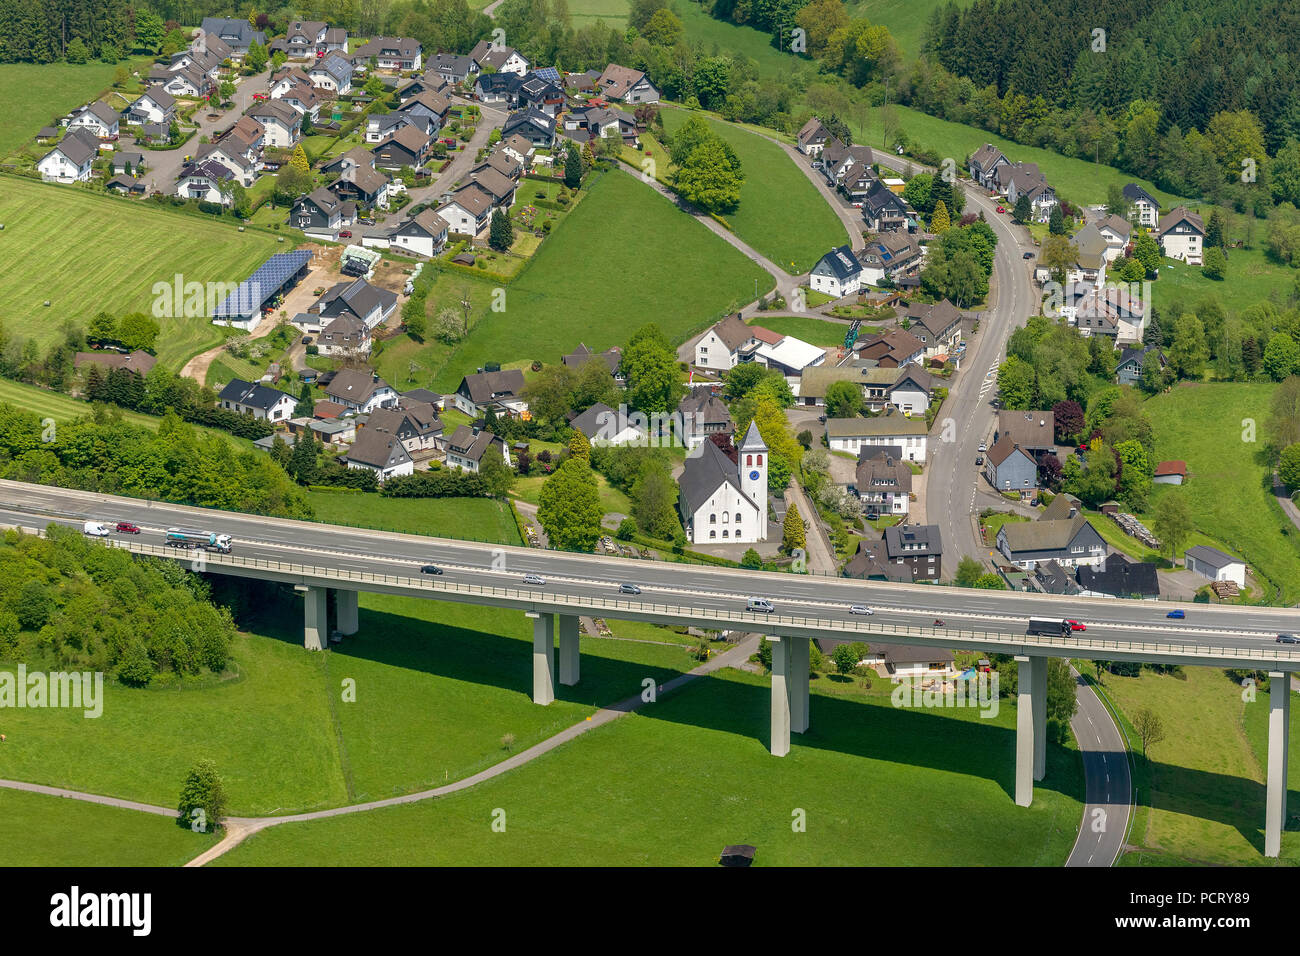 Bleche bridge on A45 Autobahn (motorway), Sauerlandlinie, aerial view of Drolshagen Stock Photo